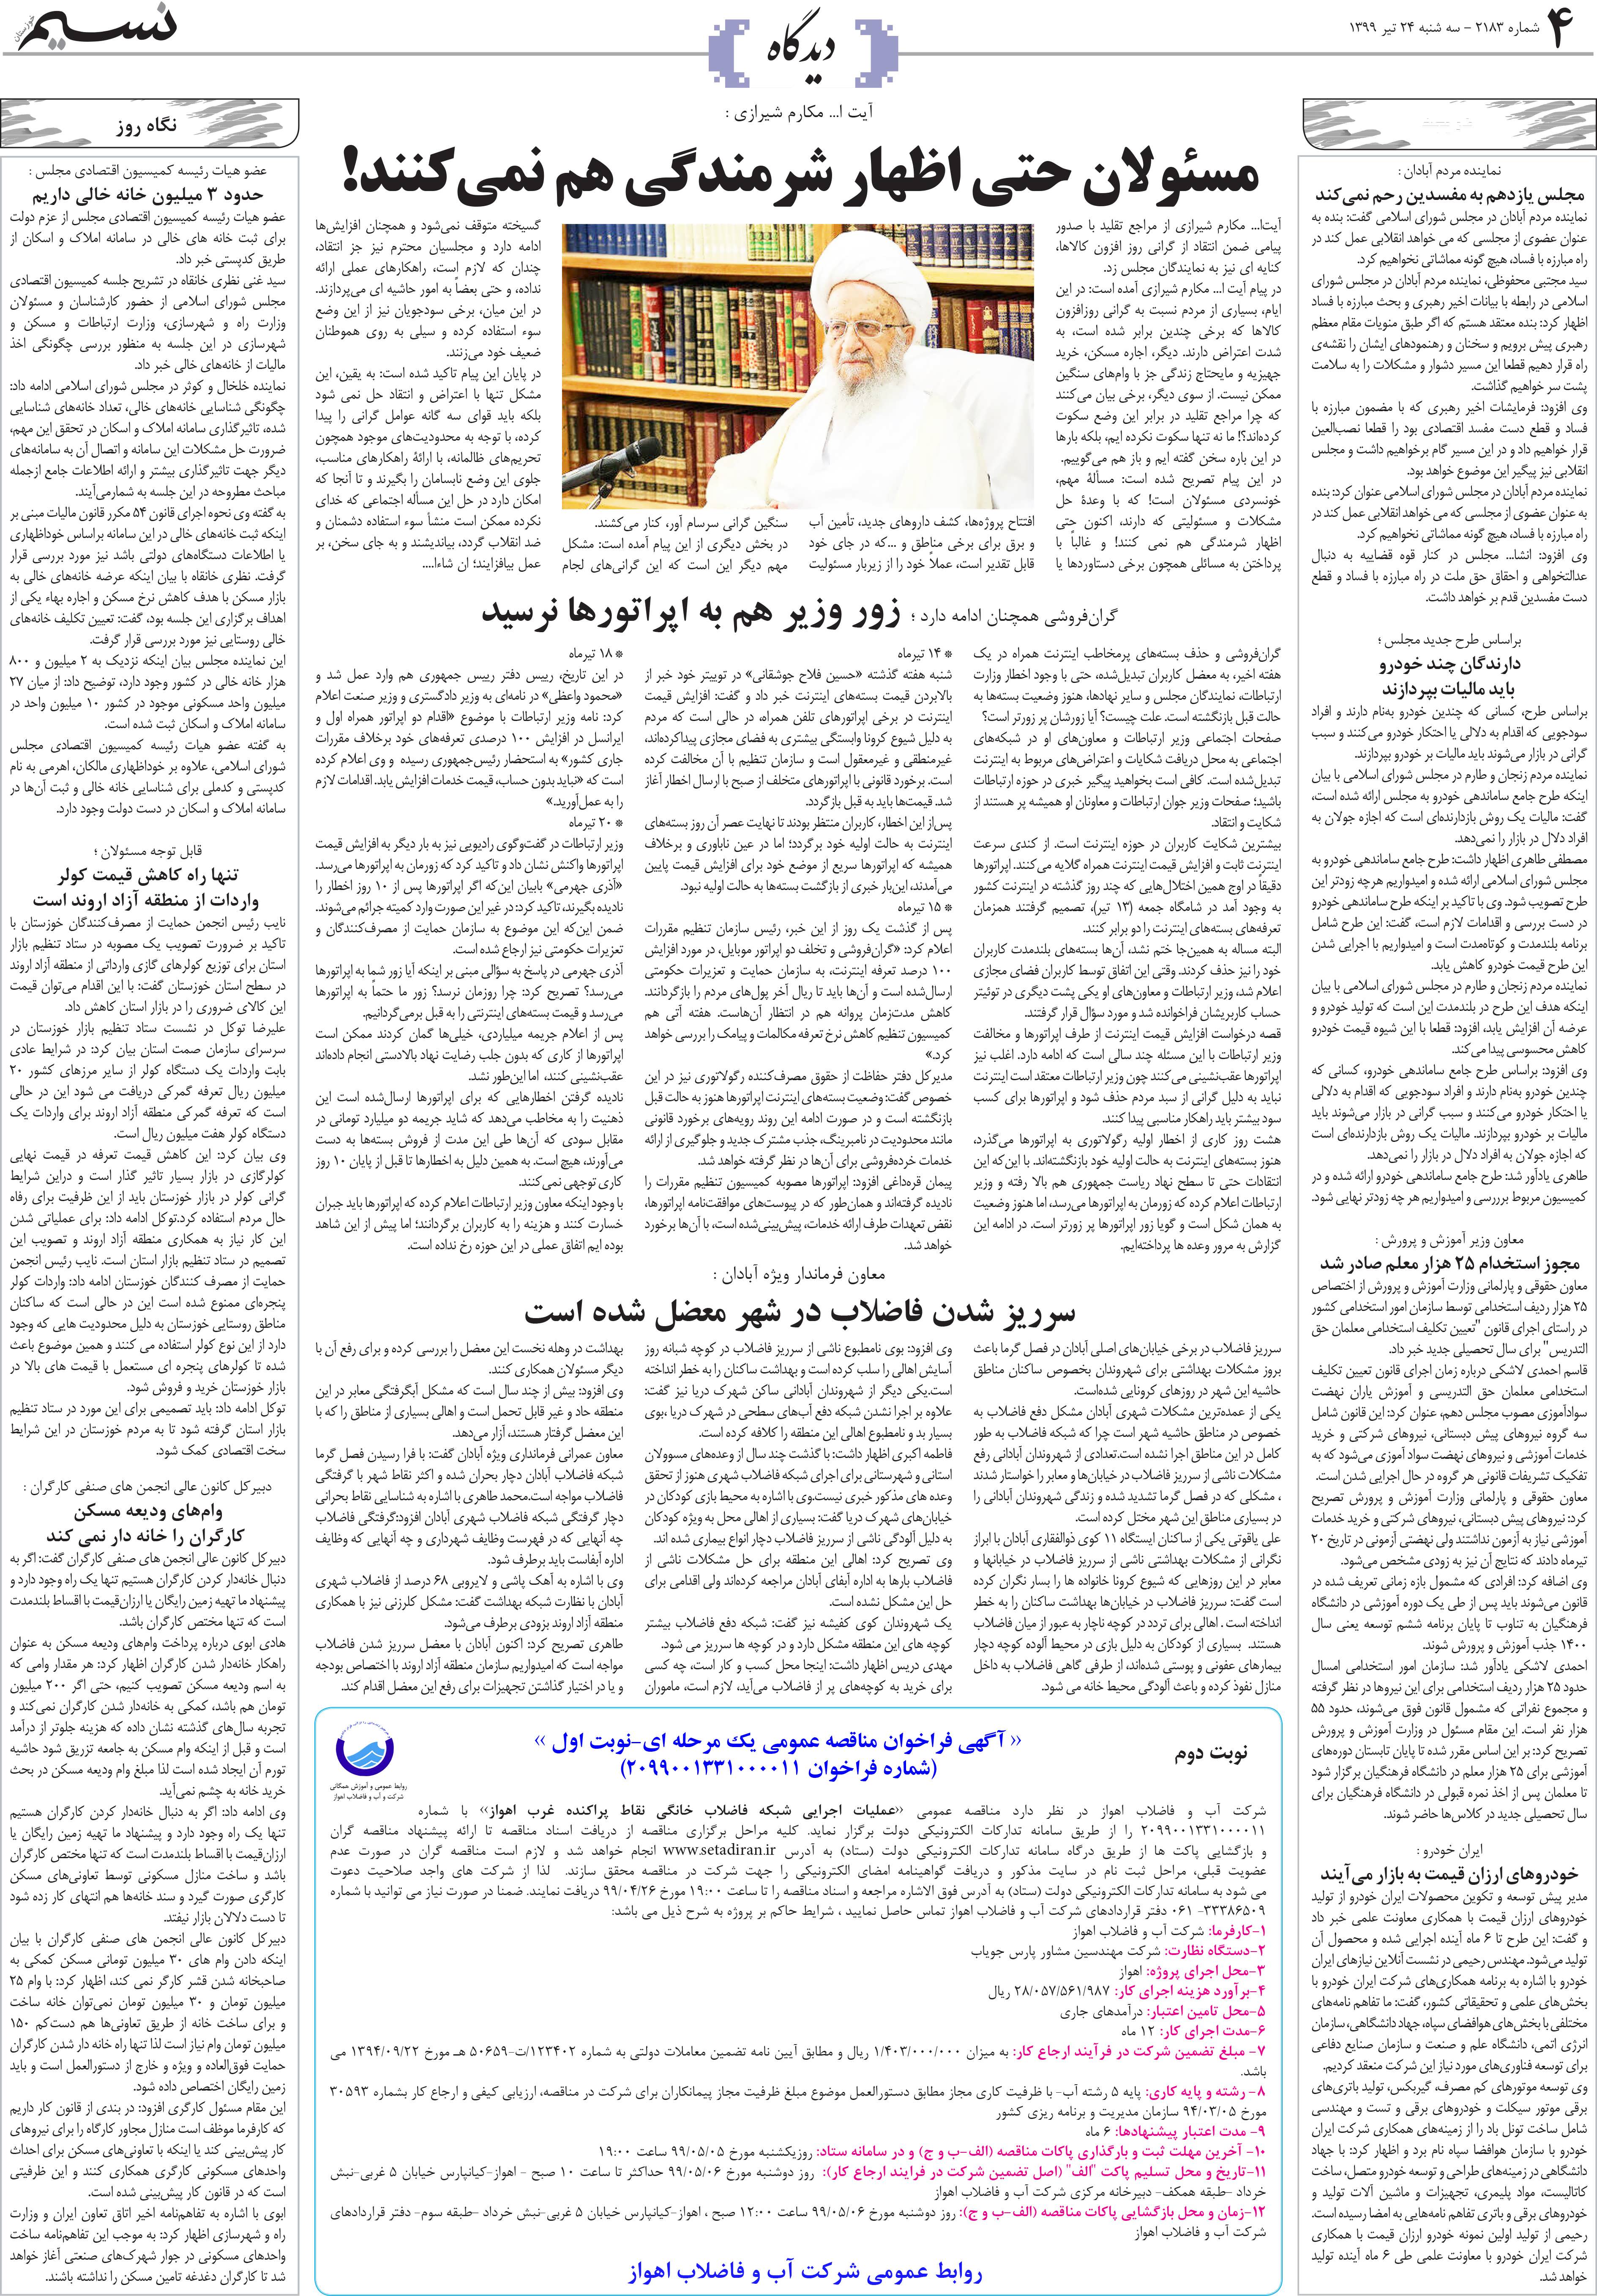 صفحه دیدگاه روزنامه نسیم شماره 2183